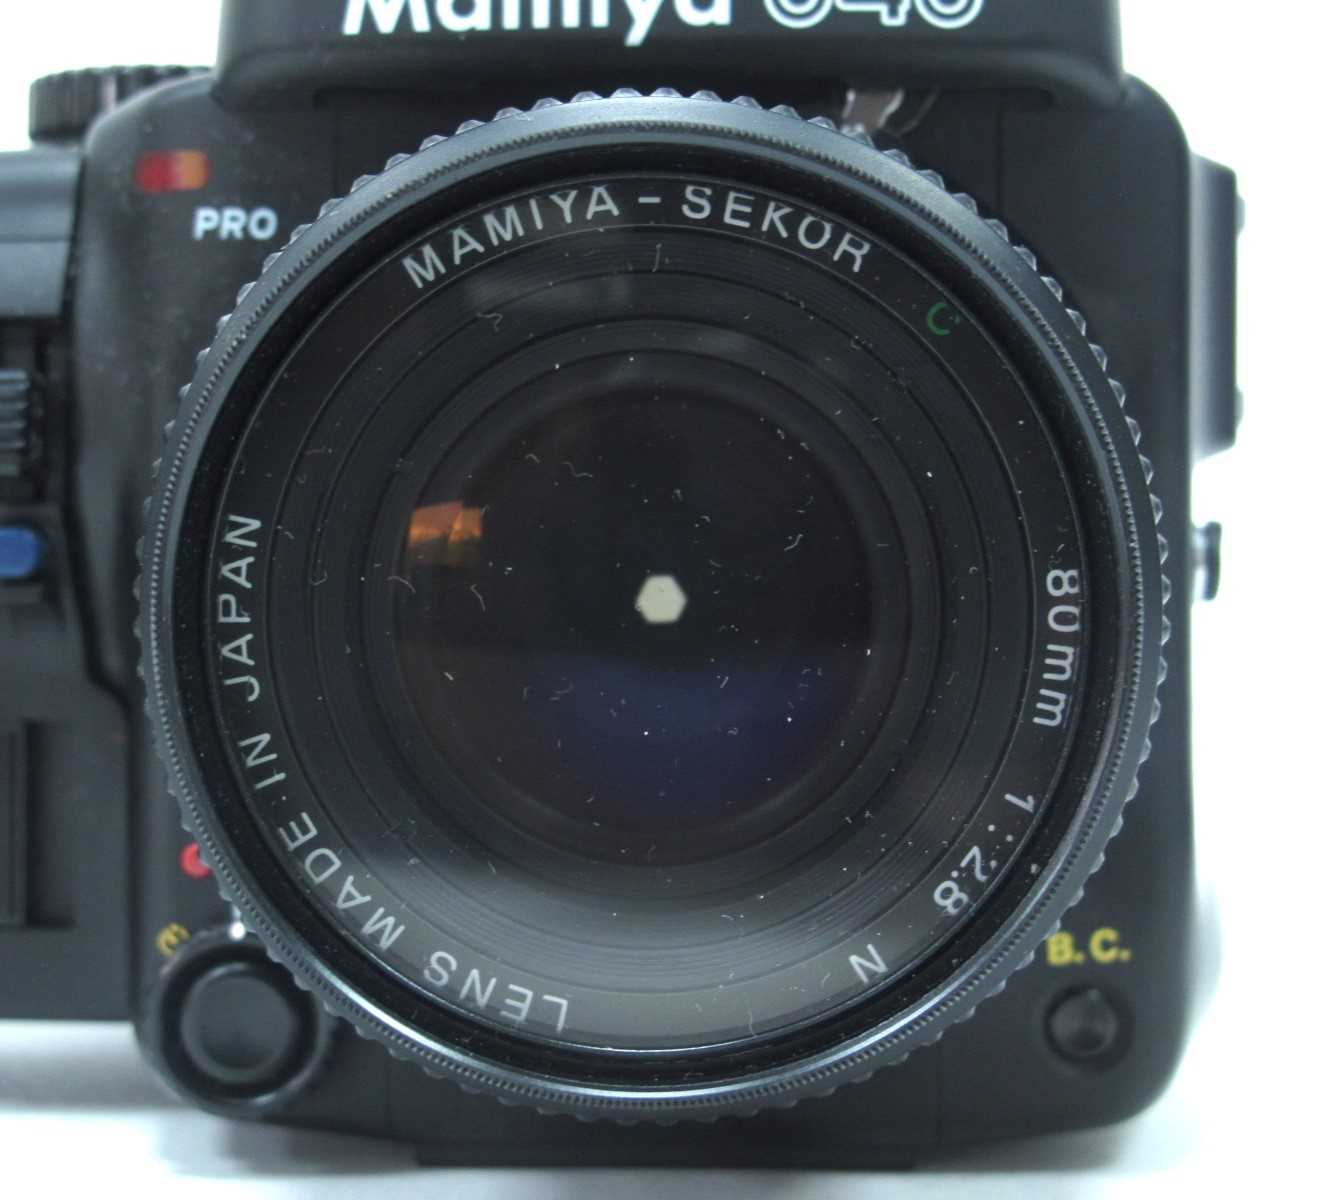 Mamiya 645 Pro Camera, having Mamiya - Sekor 80mm lens 1:2.8, extra 150mm 1:3.5 and 55mm 1:2.8 - Image 4 of 10